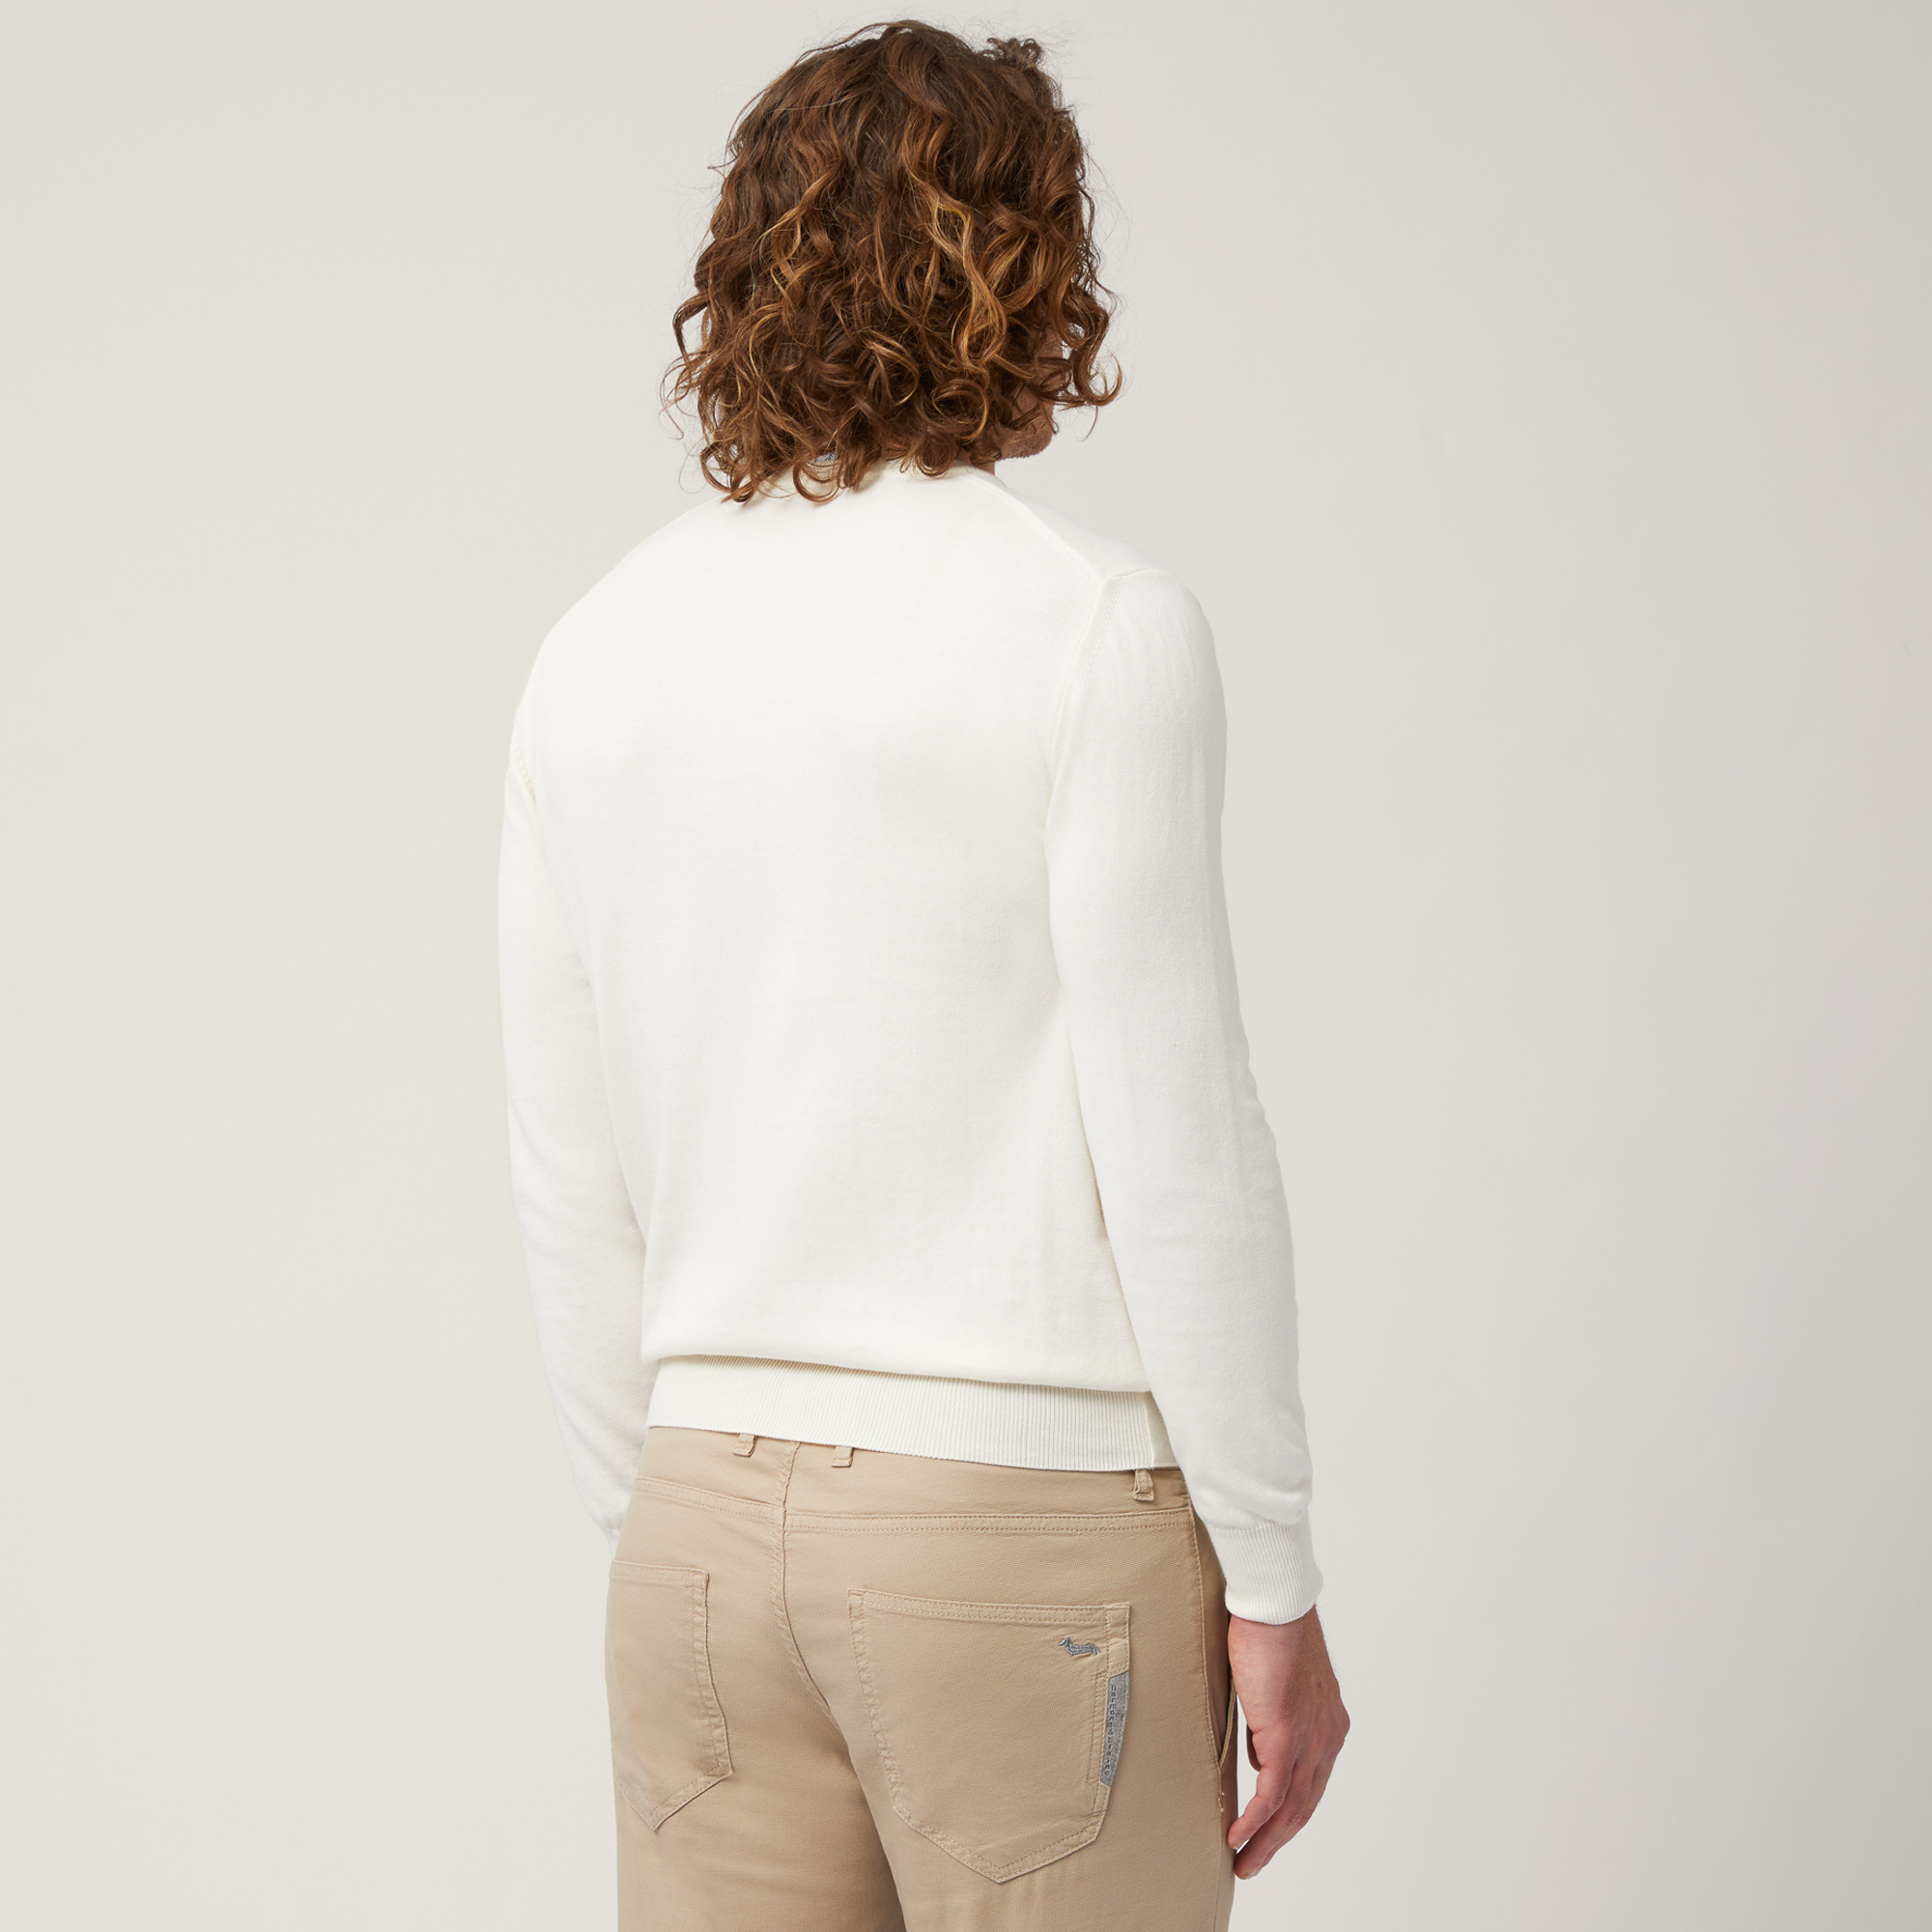 Jersey de algodón con cuello redondo, Blanco, large image number 1